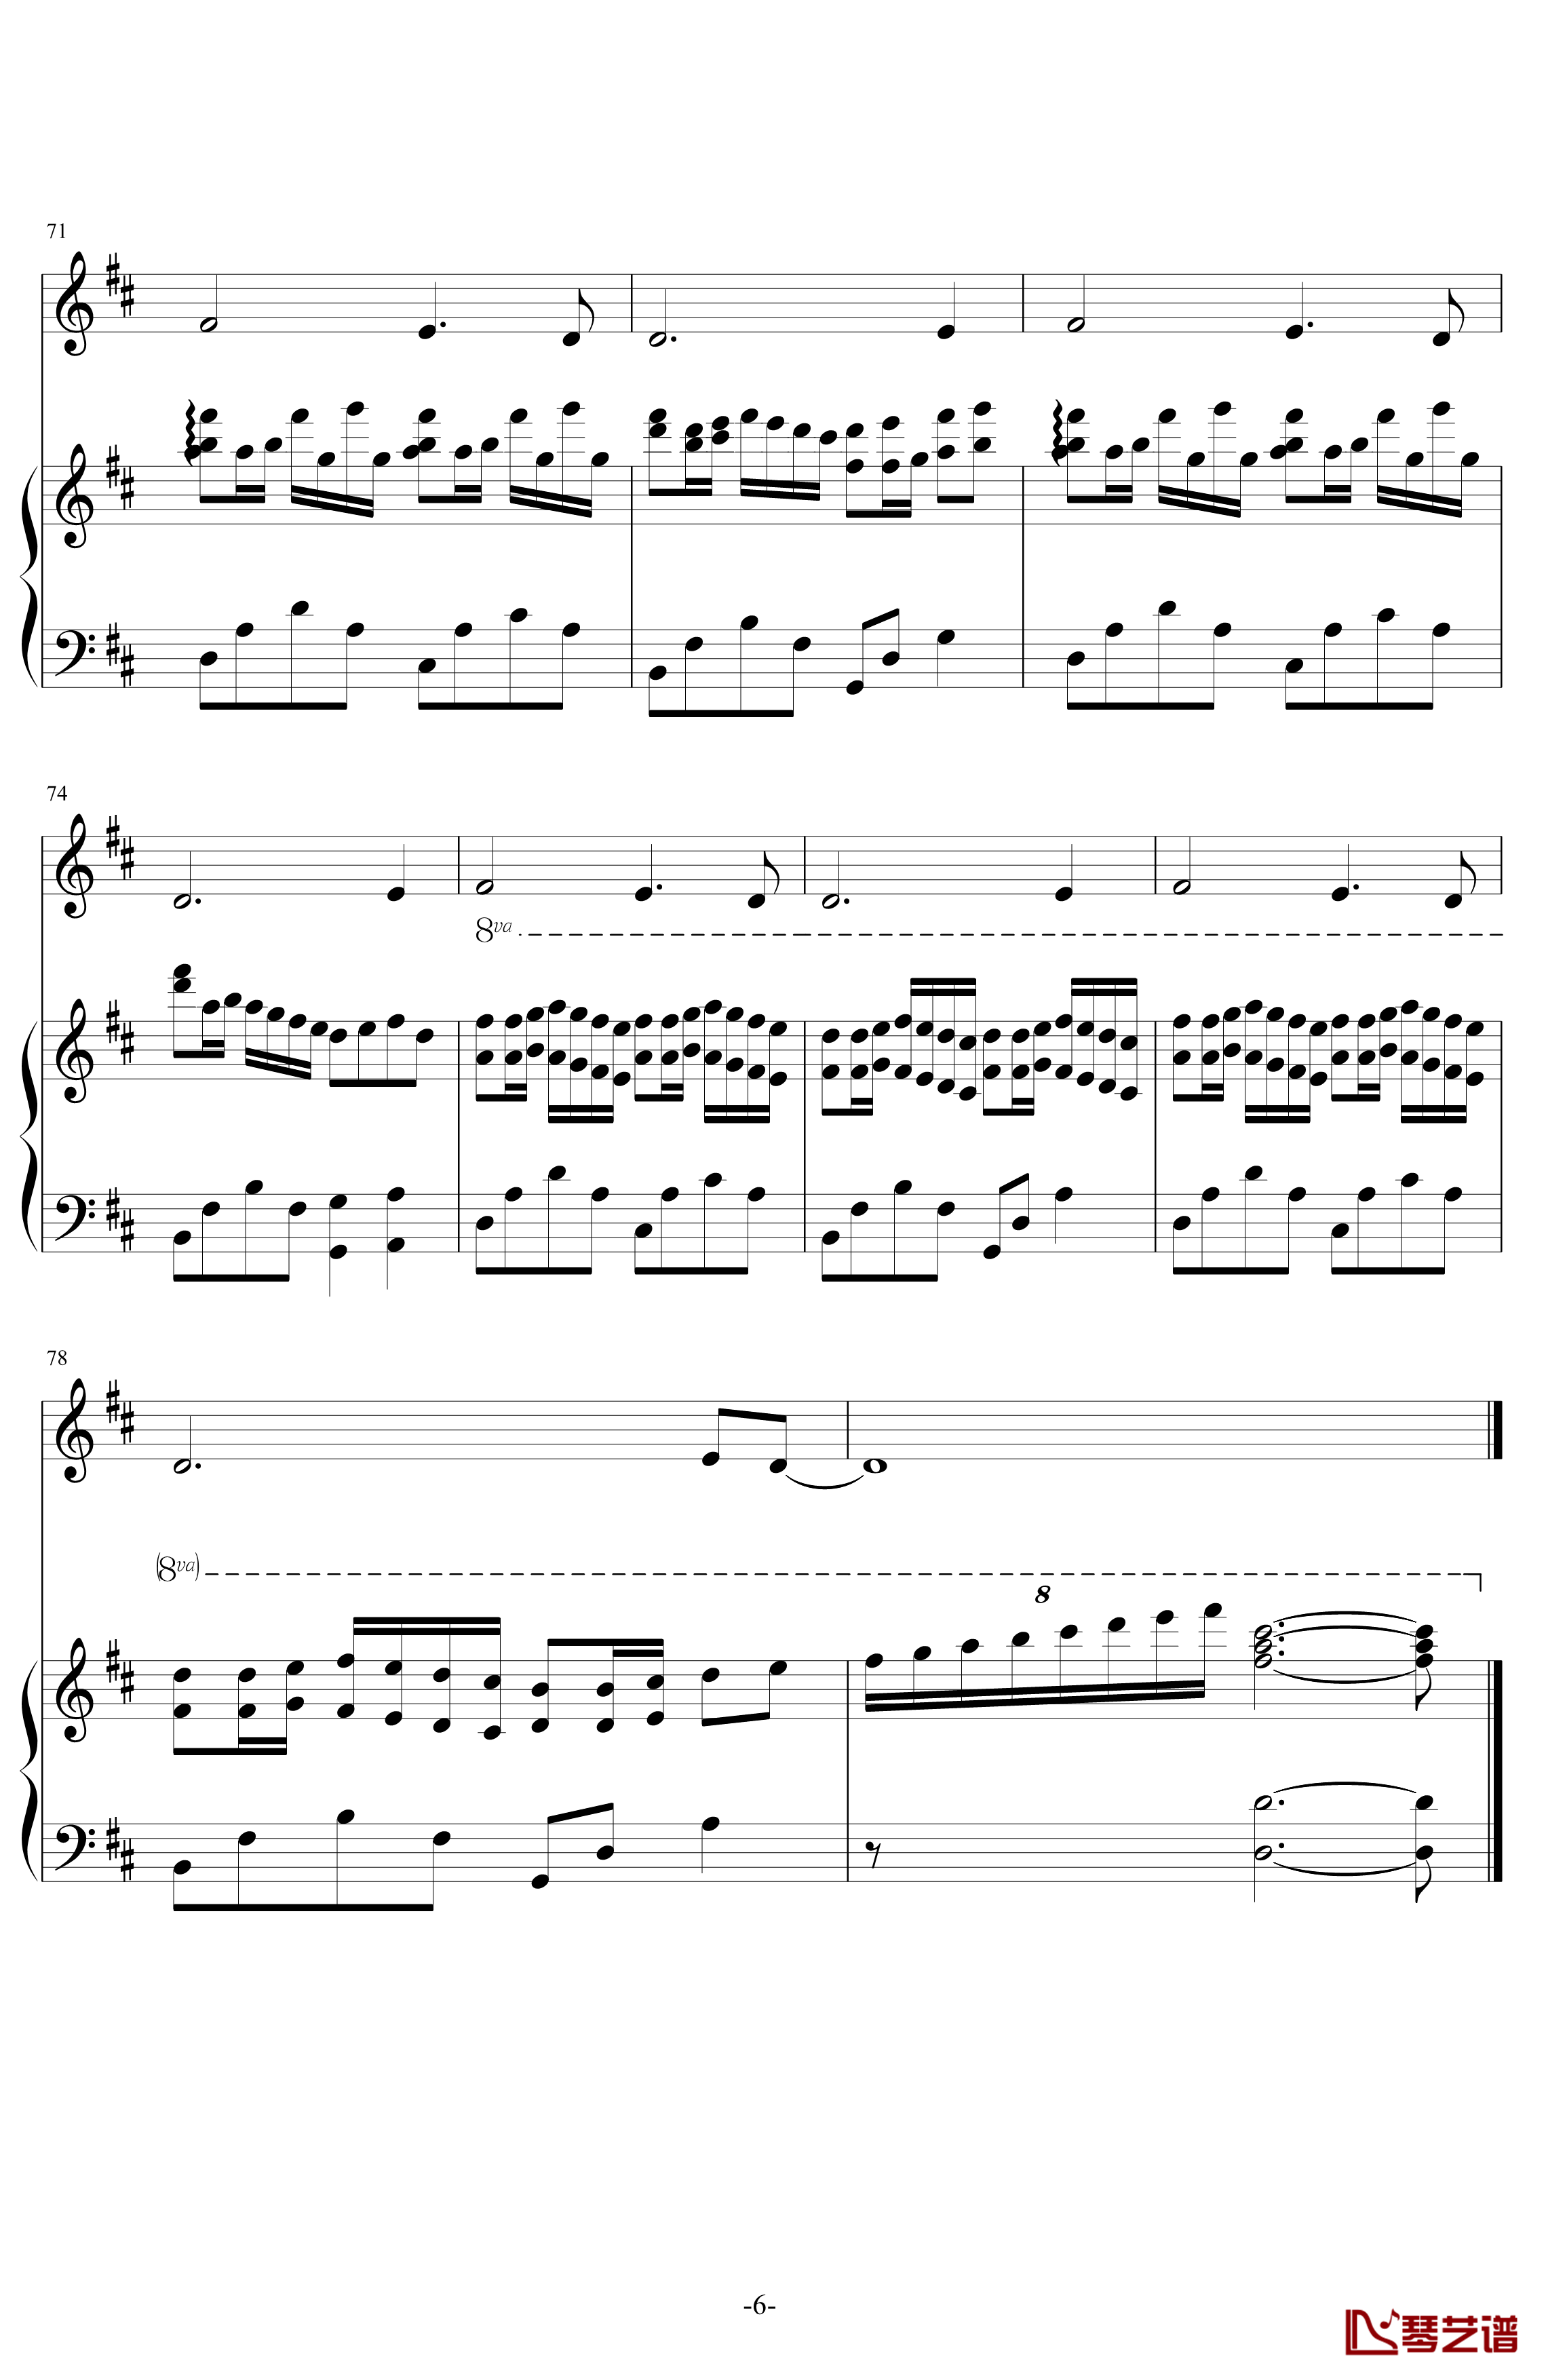 明月钢琴谱-笛子钢琴-动漫影视6